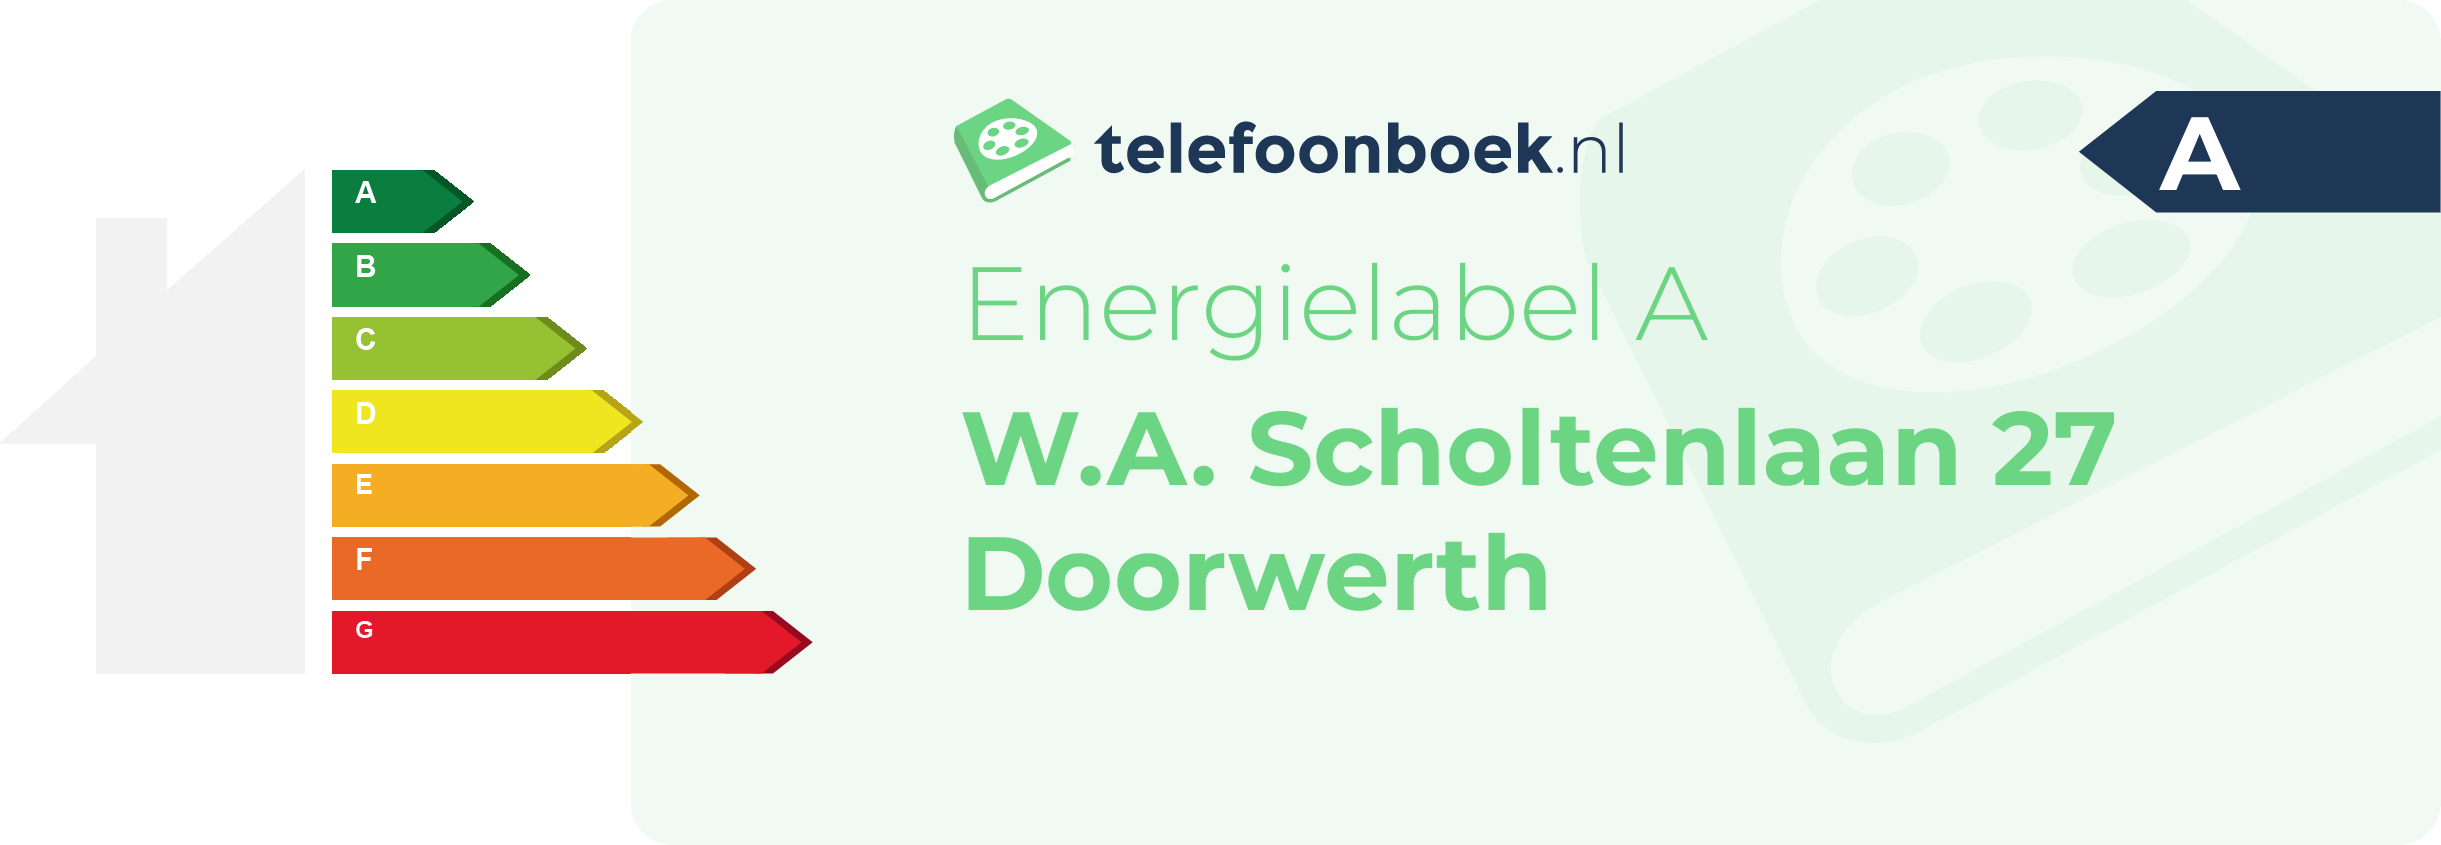 Energielabel W.A. Scholtenlaan 27 Doorwerth